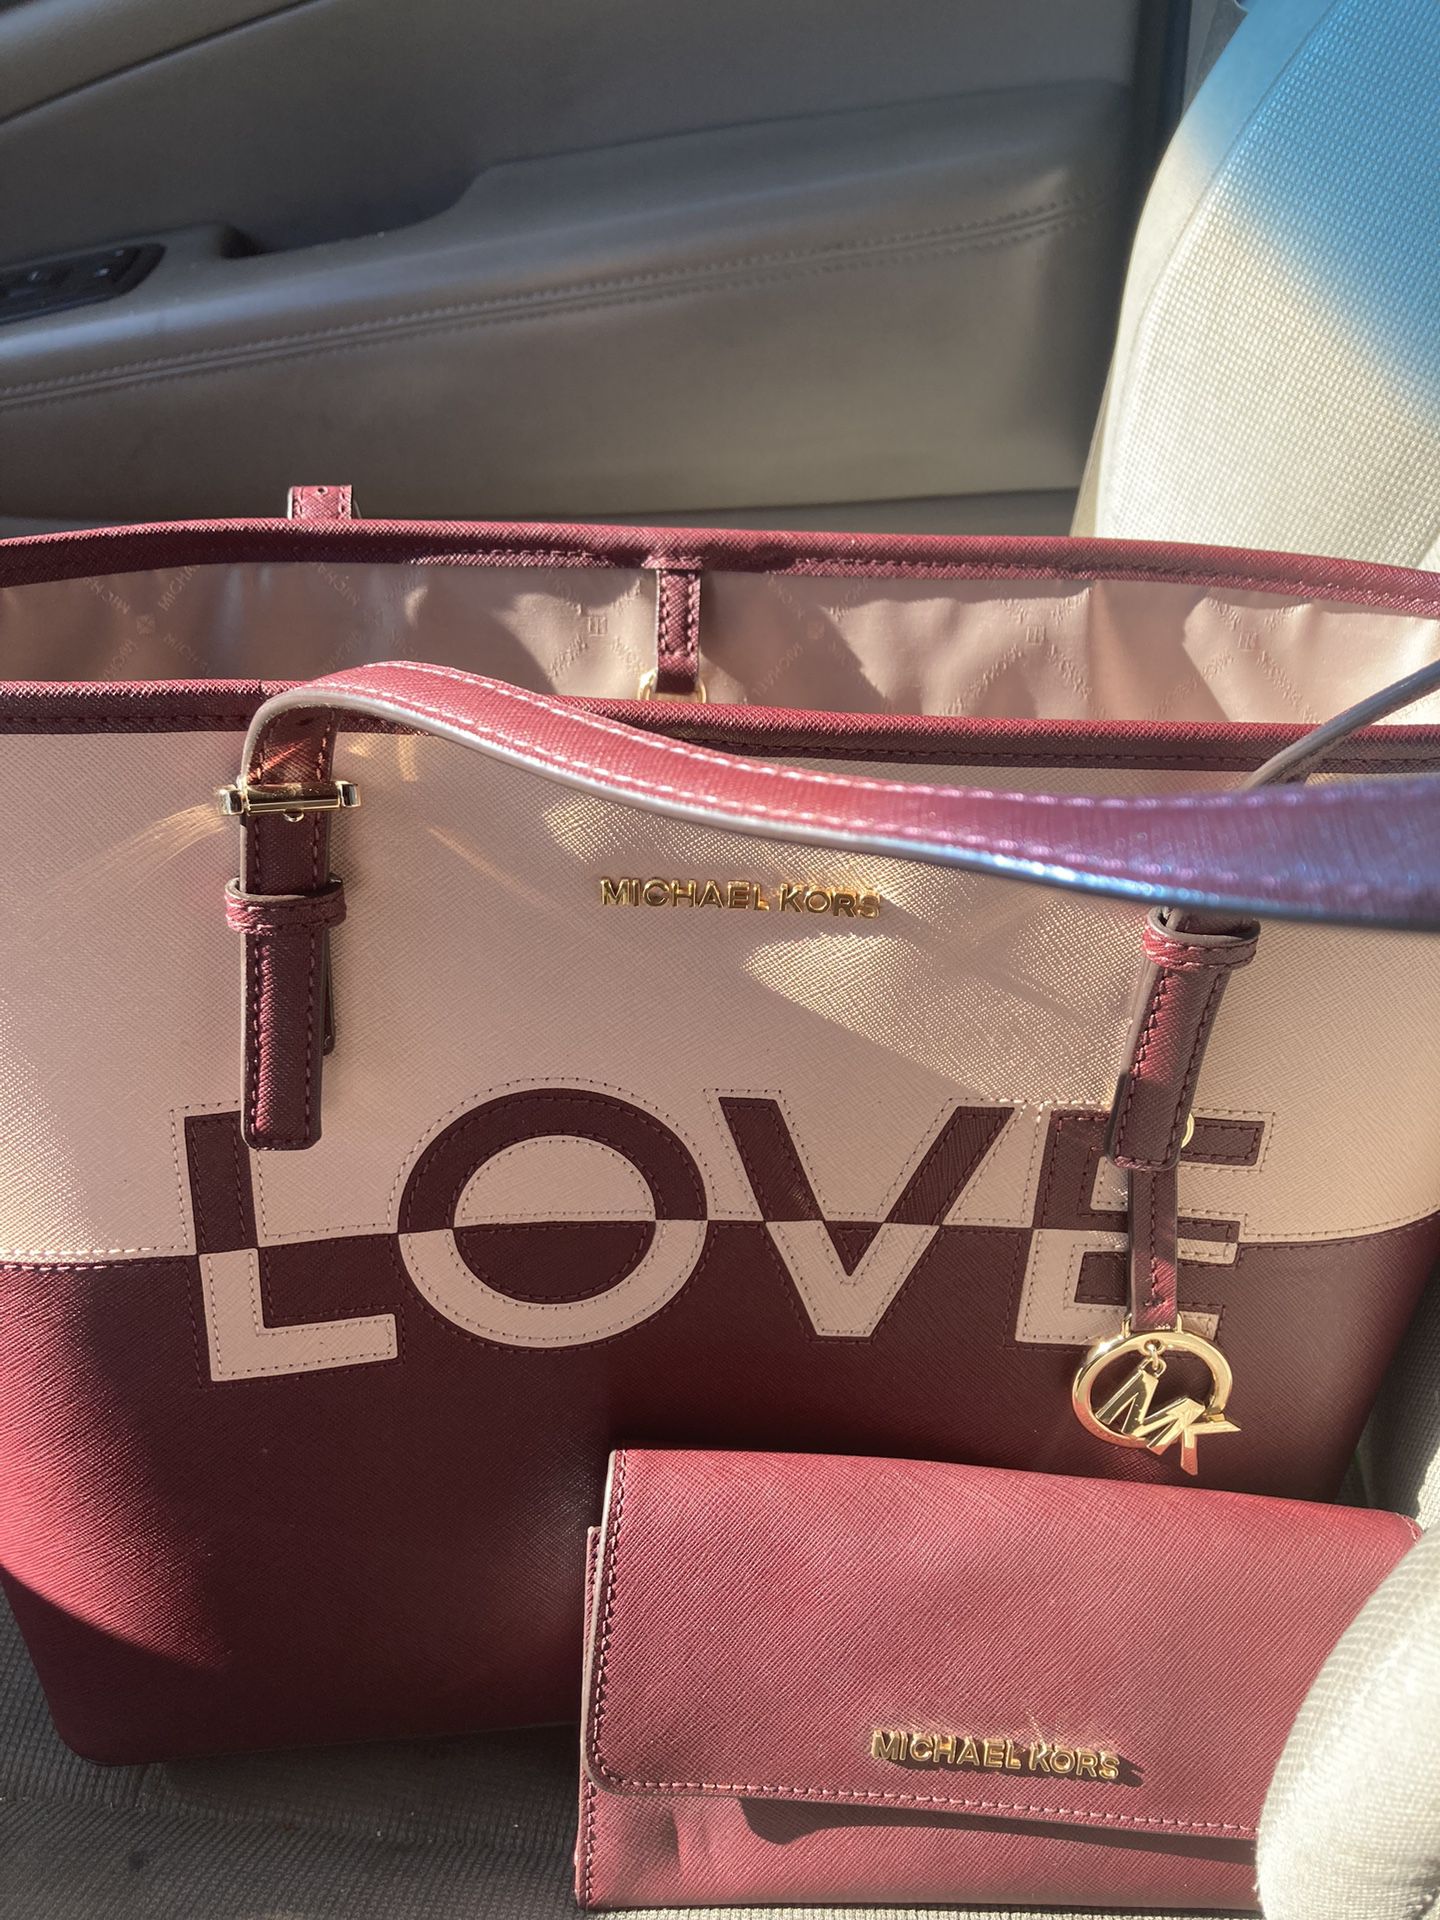 NEW Michael Kors “LOVE” Bag w/Wallet for Sale in Phoenix, AZ - OfferUp